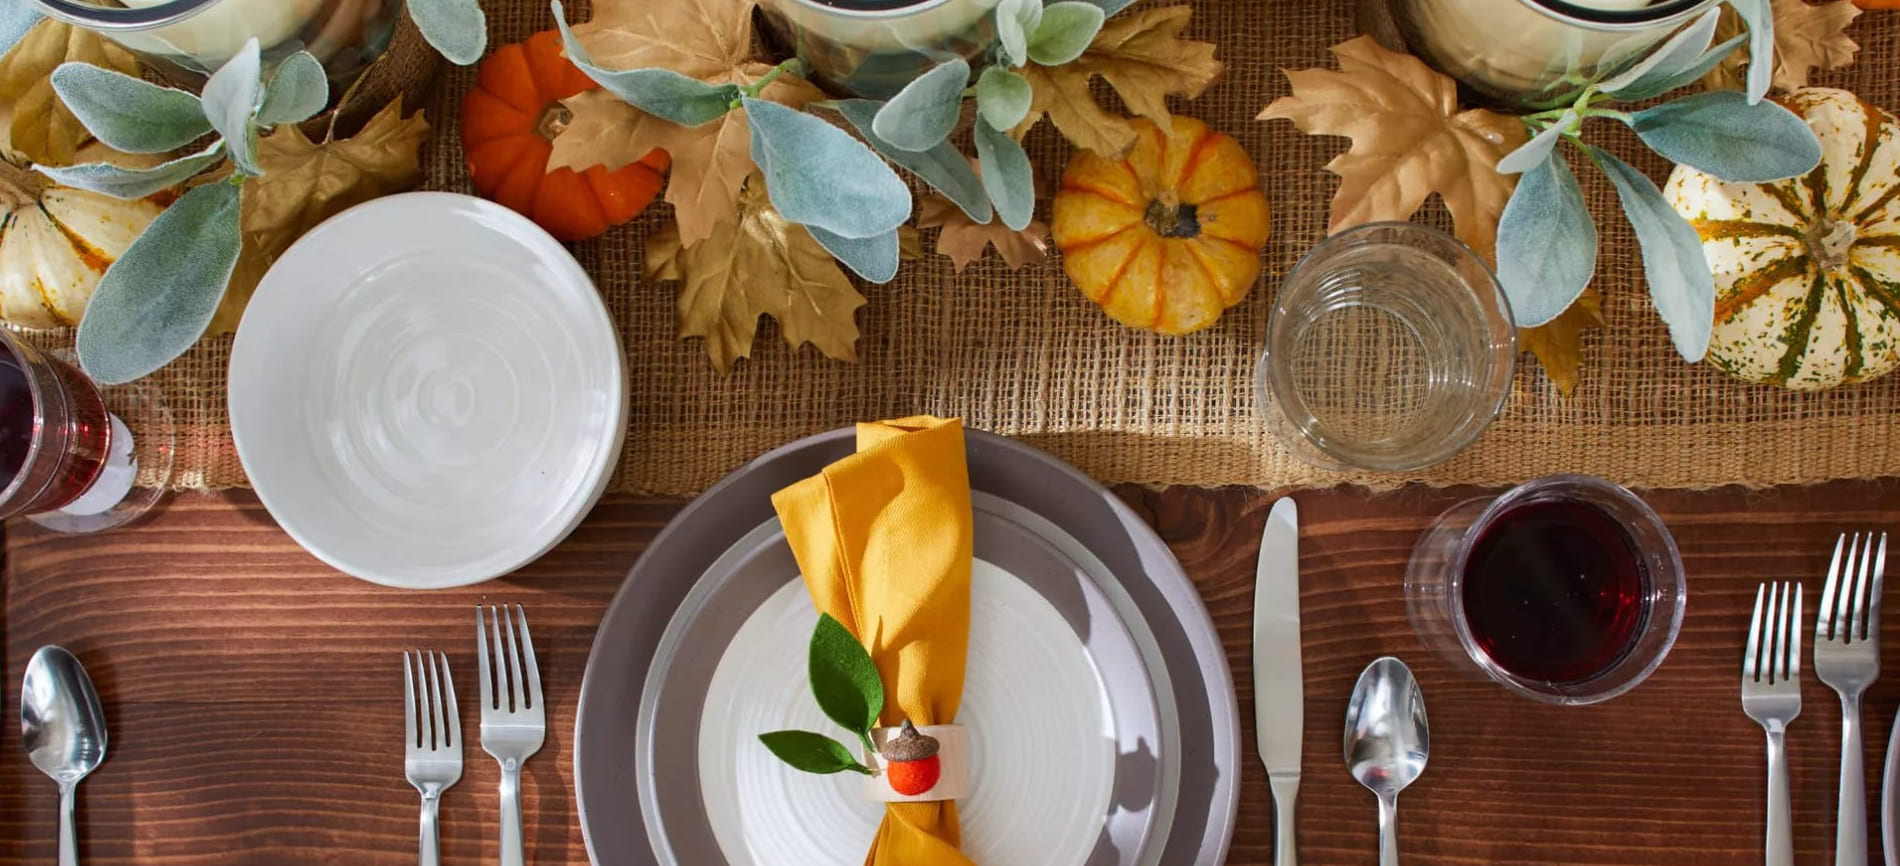 Miten kattaa pöytä oikein kiitospäivän päivällistä varten?